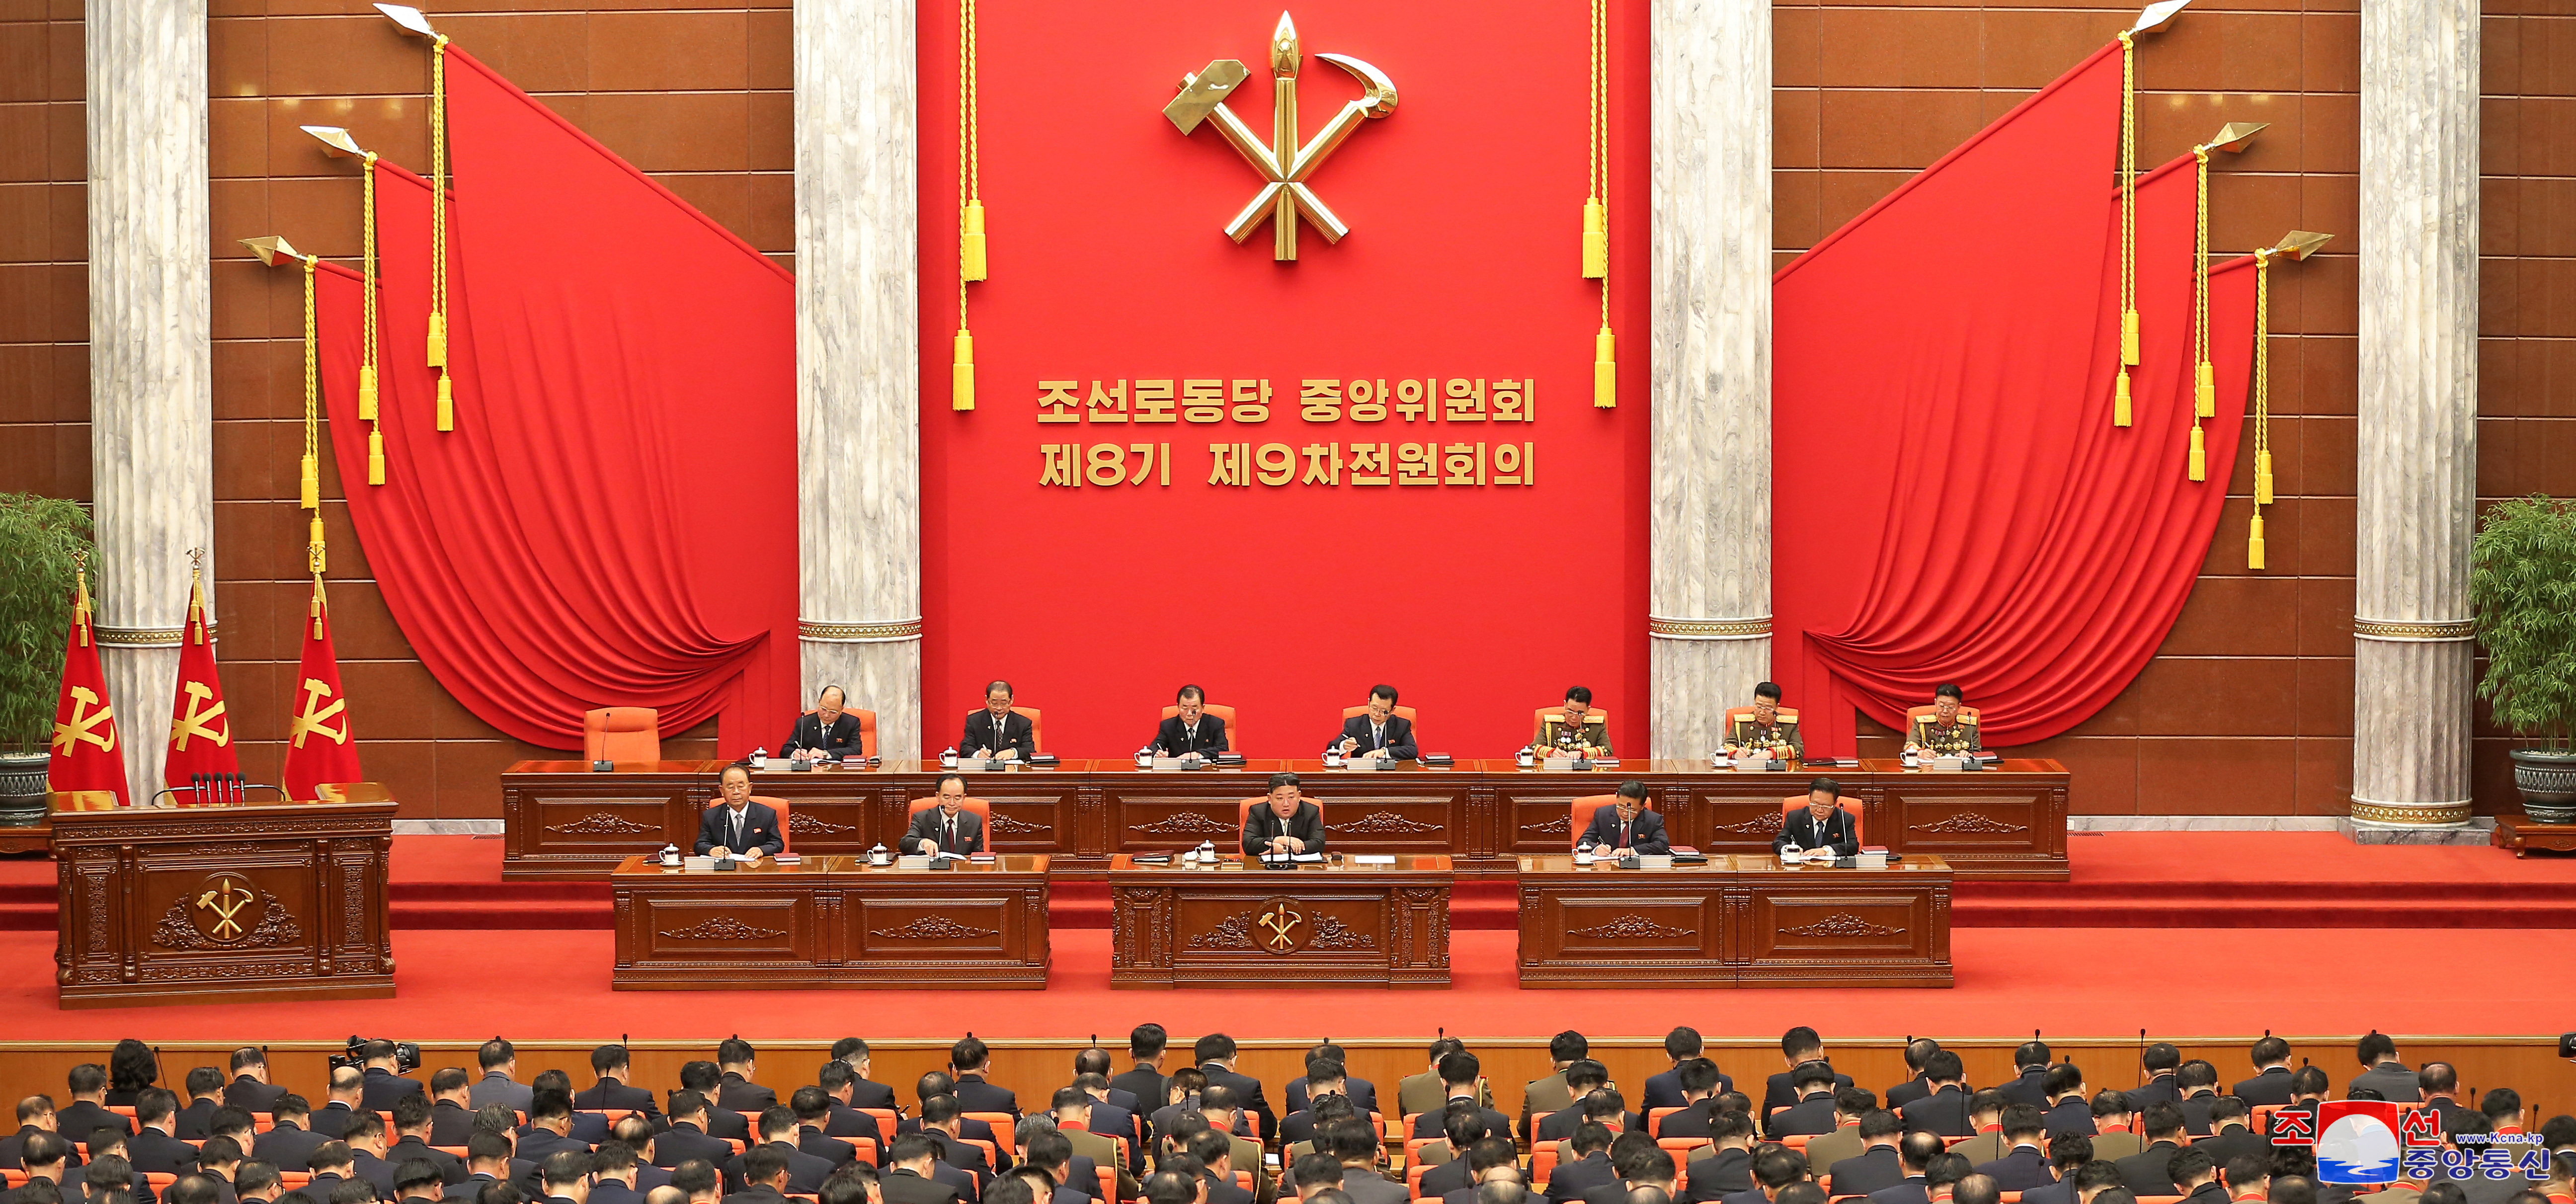 North Korea's Kim convenes key party meeting ahead of new year -KCNA |  Reuters